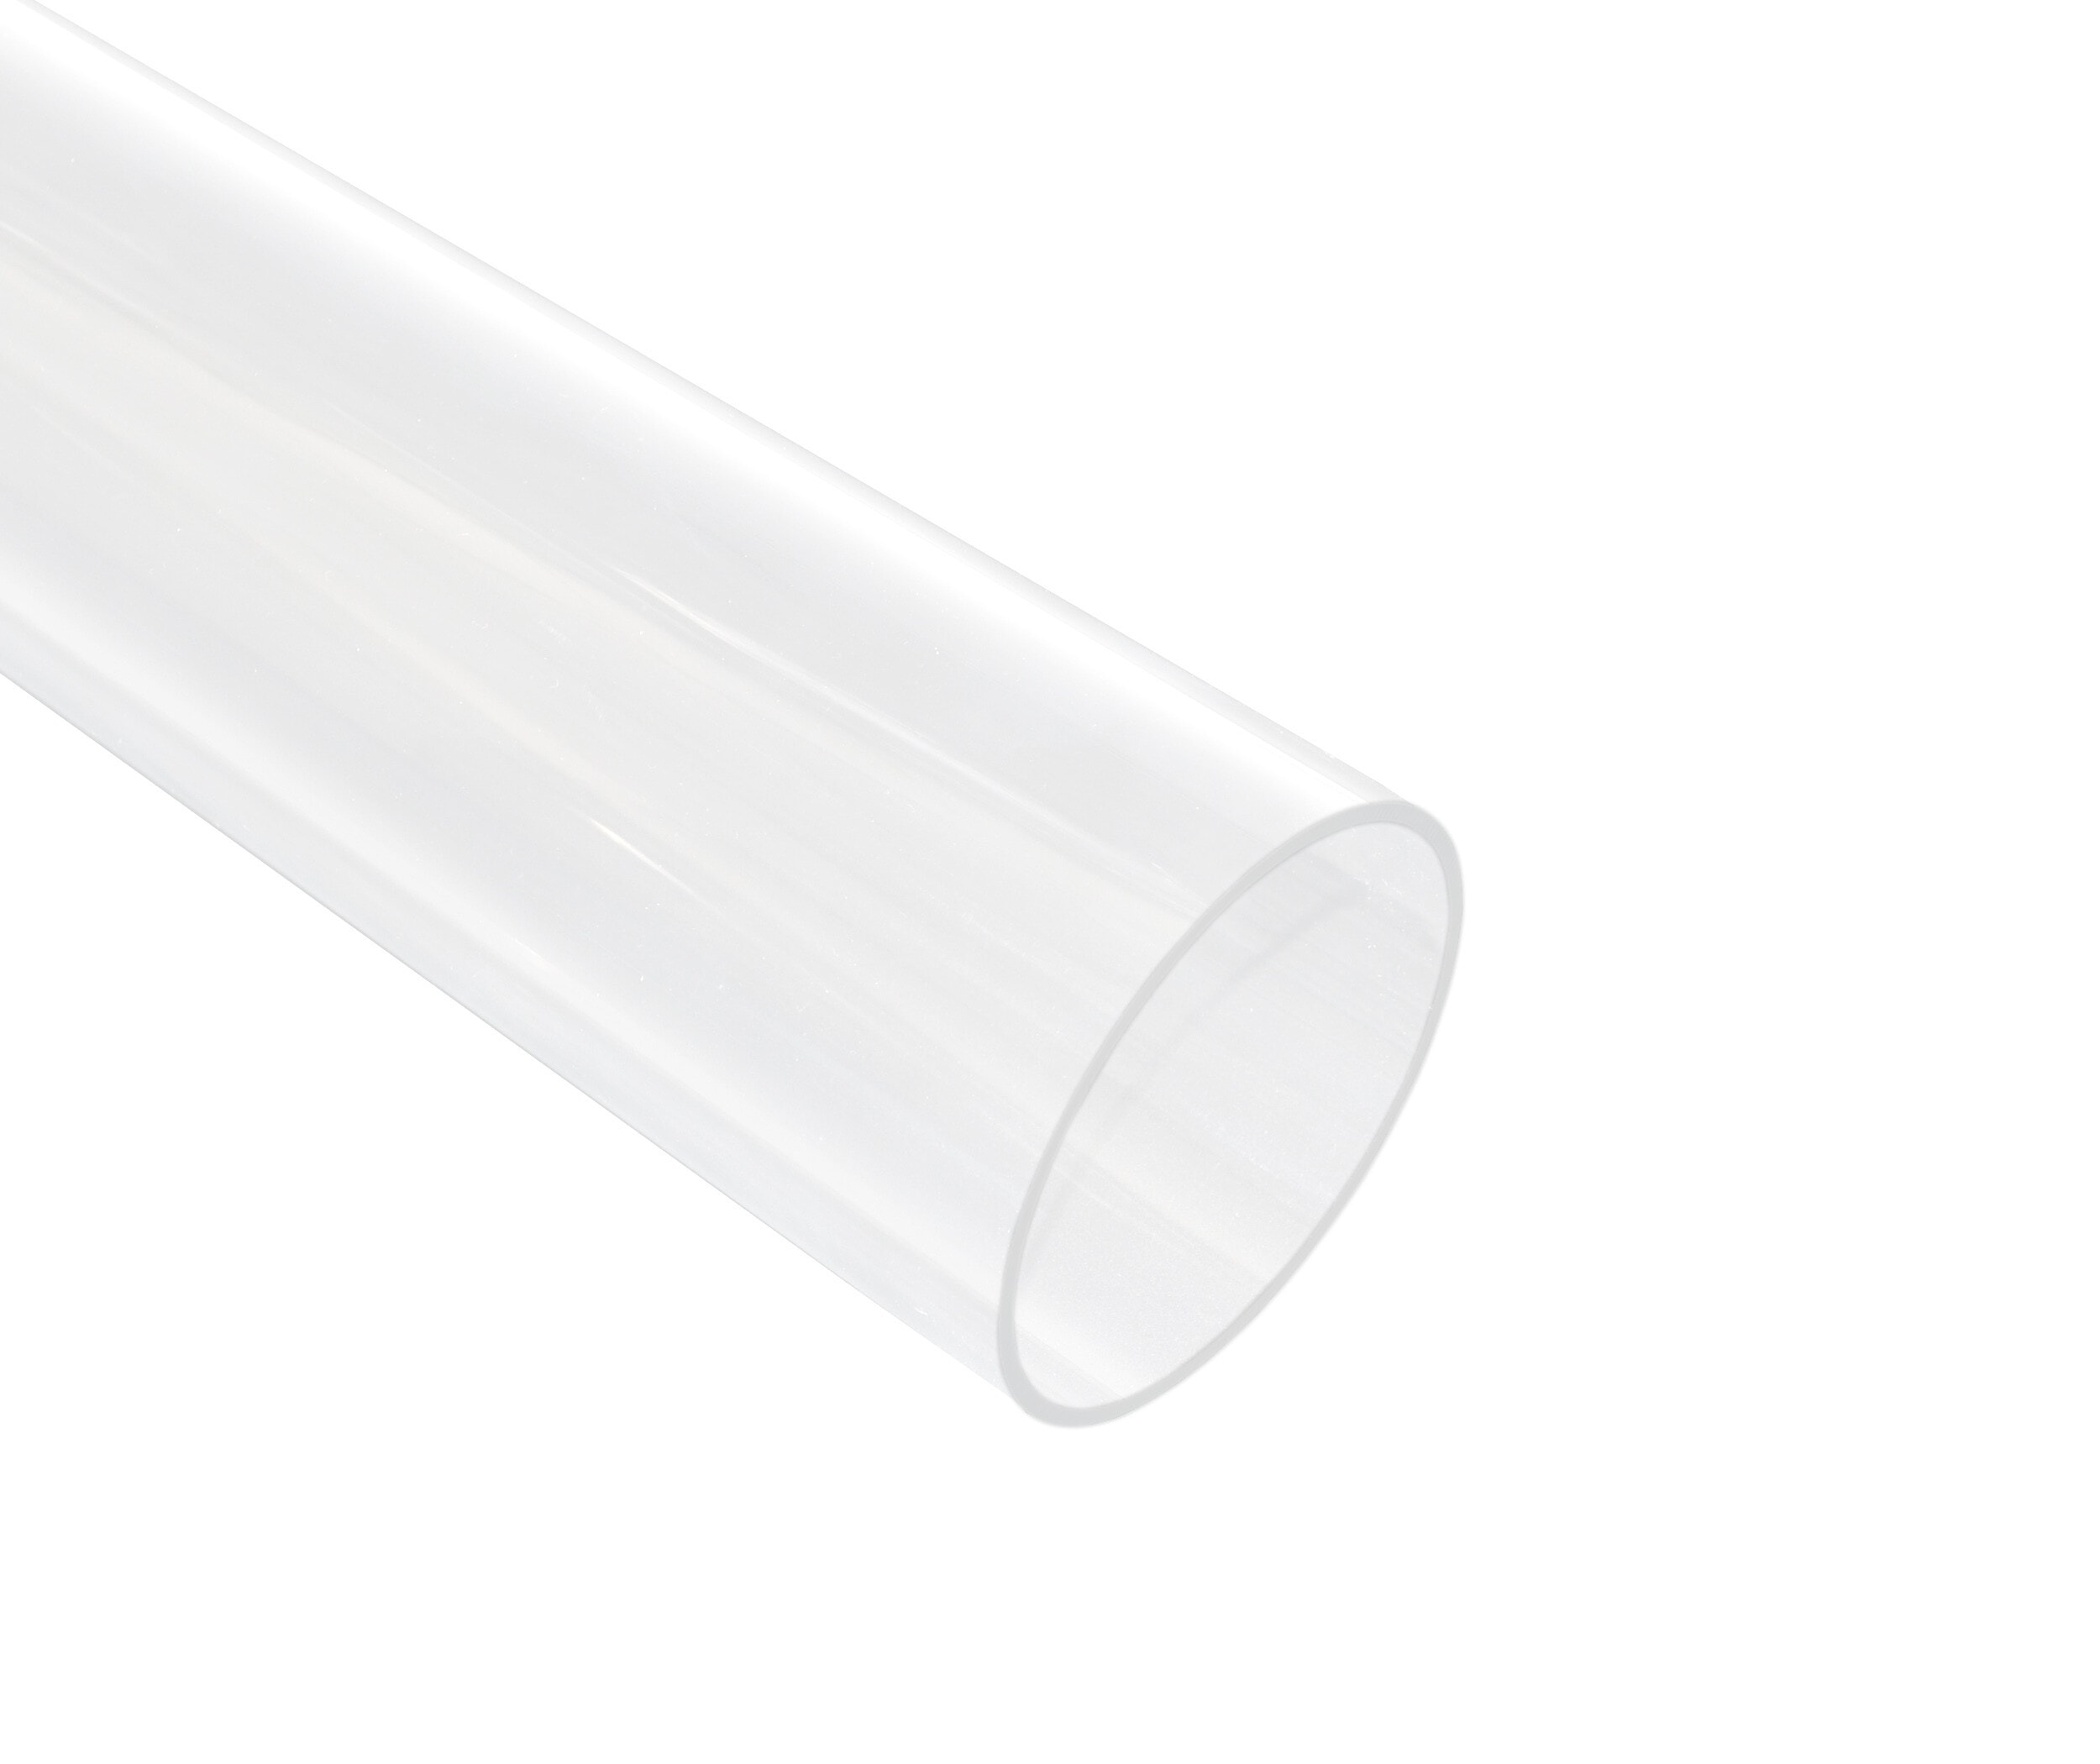 51mm ID 55mm OD 305mm Tube Acrylique Transparent Tube Rond Rigide pour  l'Éclairage, les Modèles, la Plomberie, l'Artisanat 